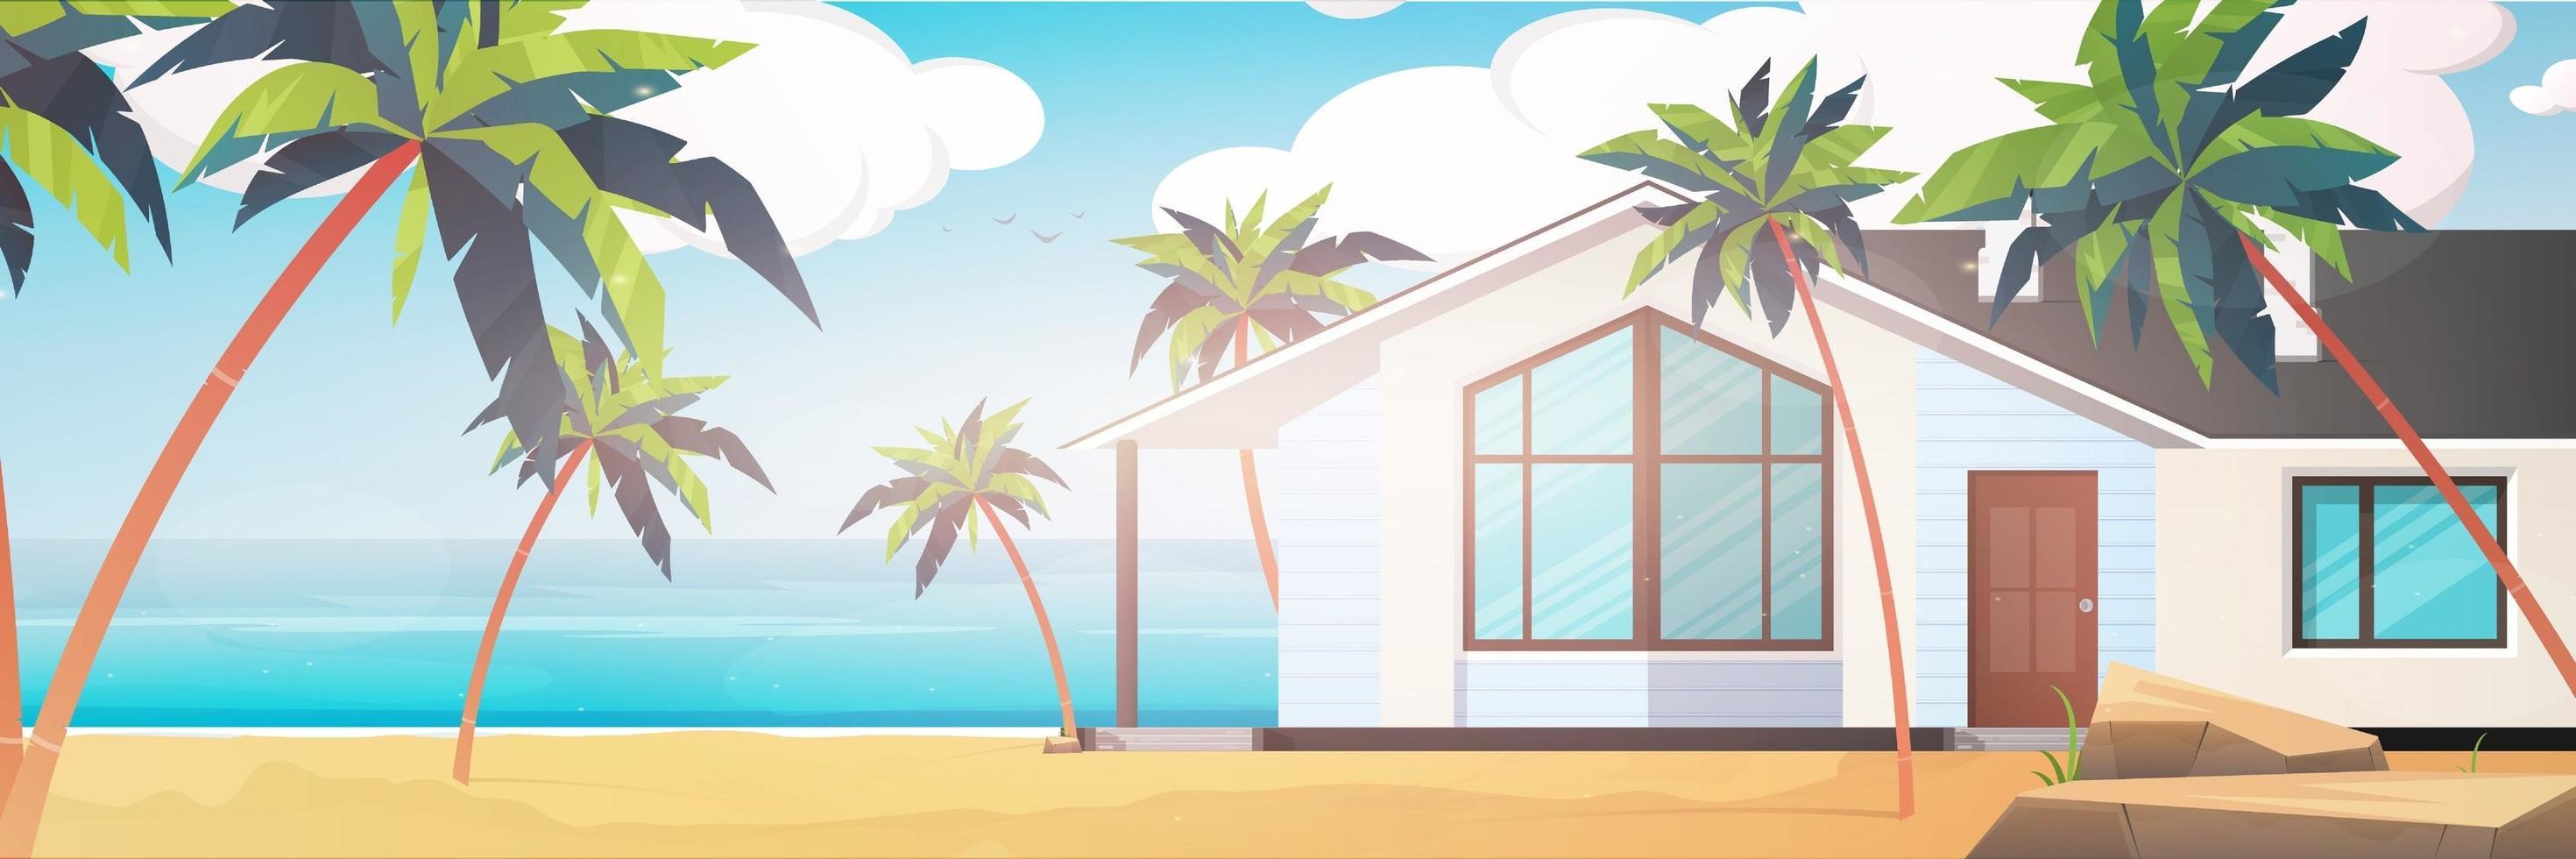 un hotel su un mare azzurro, pulito e calmo. villa su una spiaggia sabbiosa con palme. concetto di vacanza estiva. illustrazione vettoriale. vettore